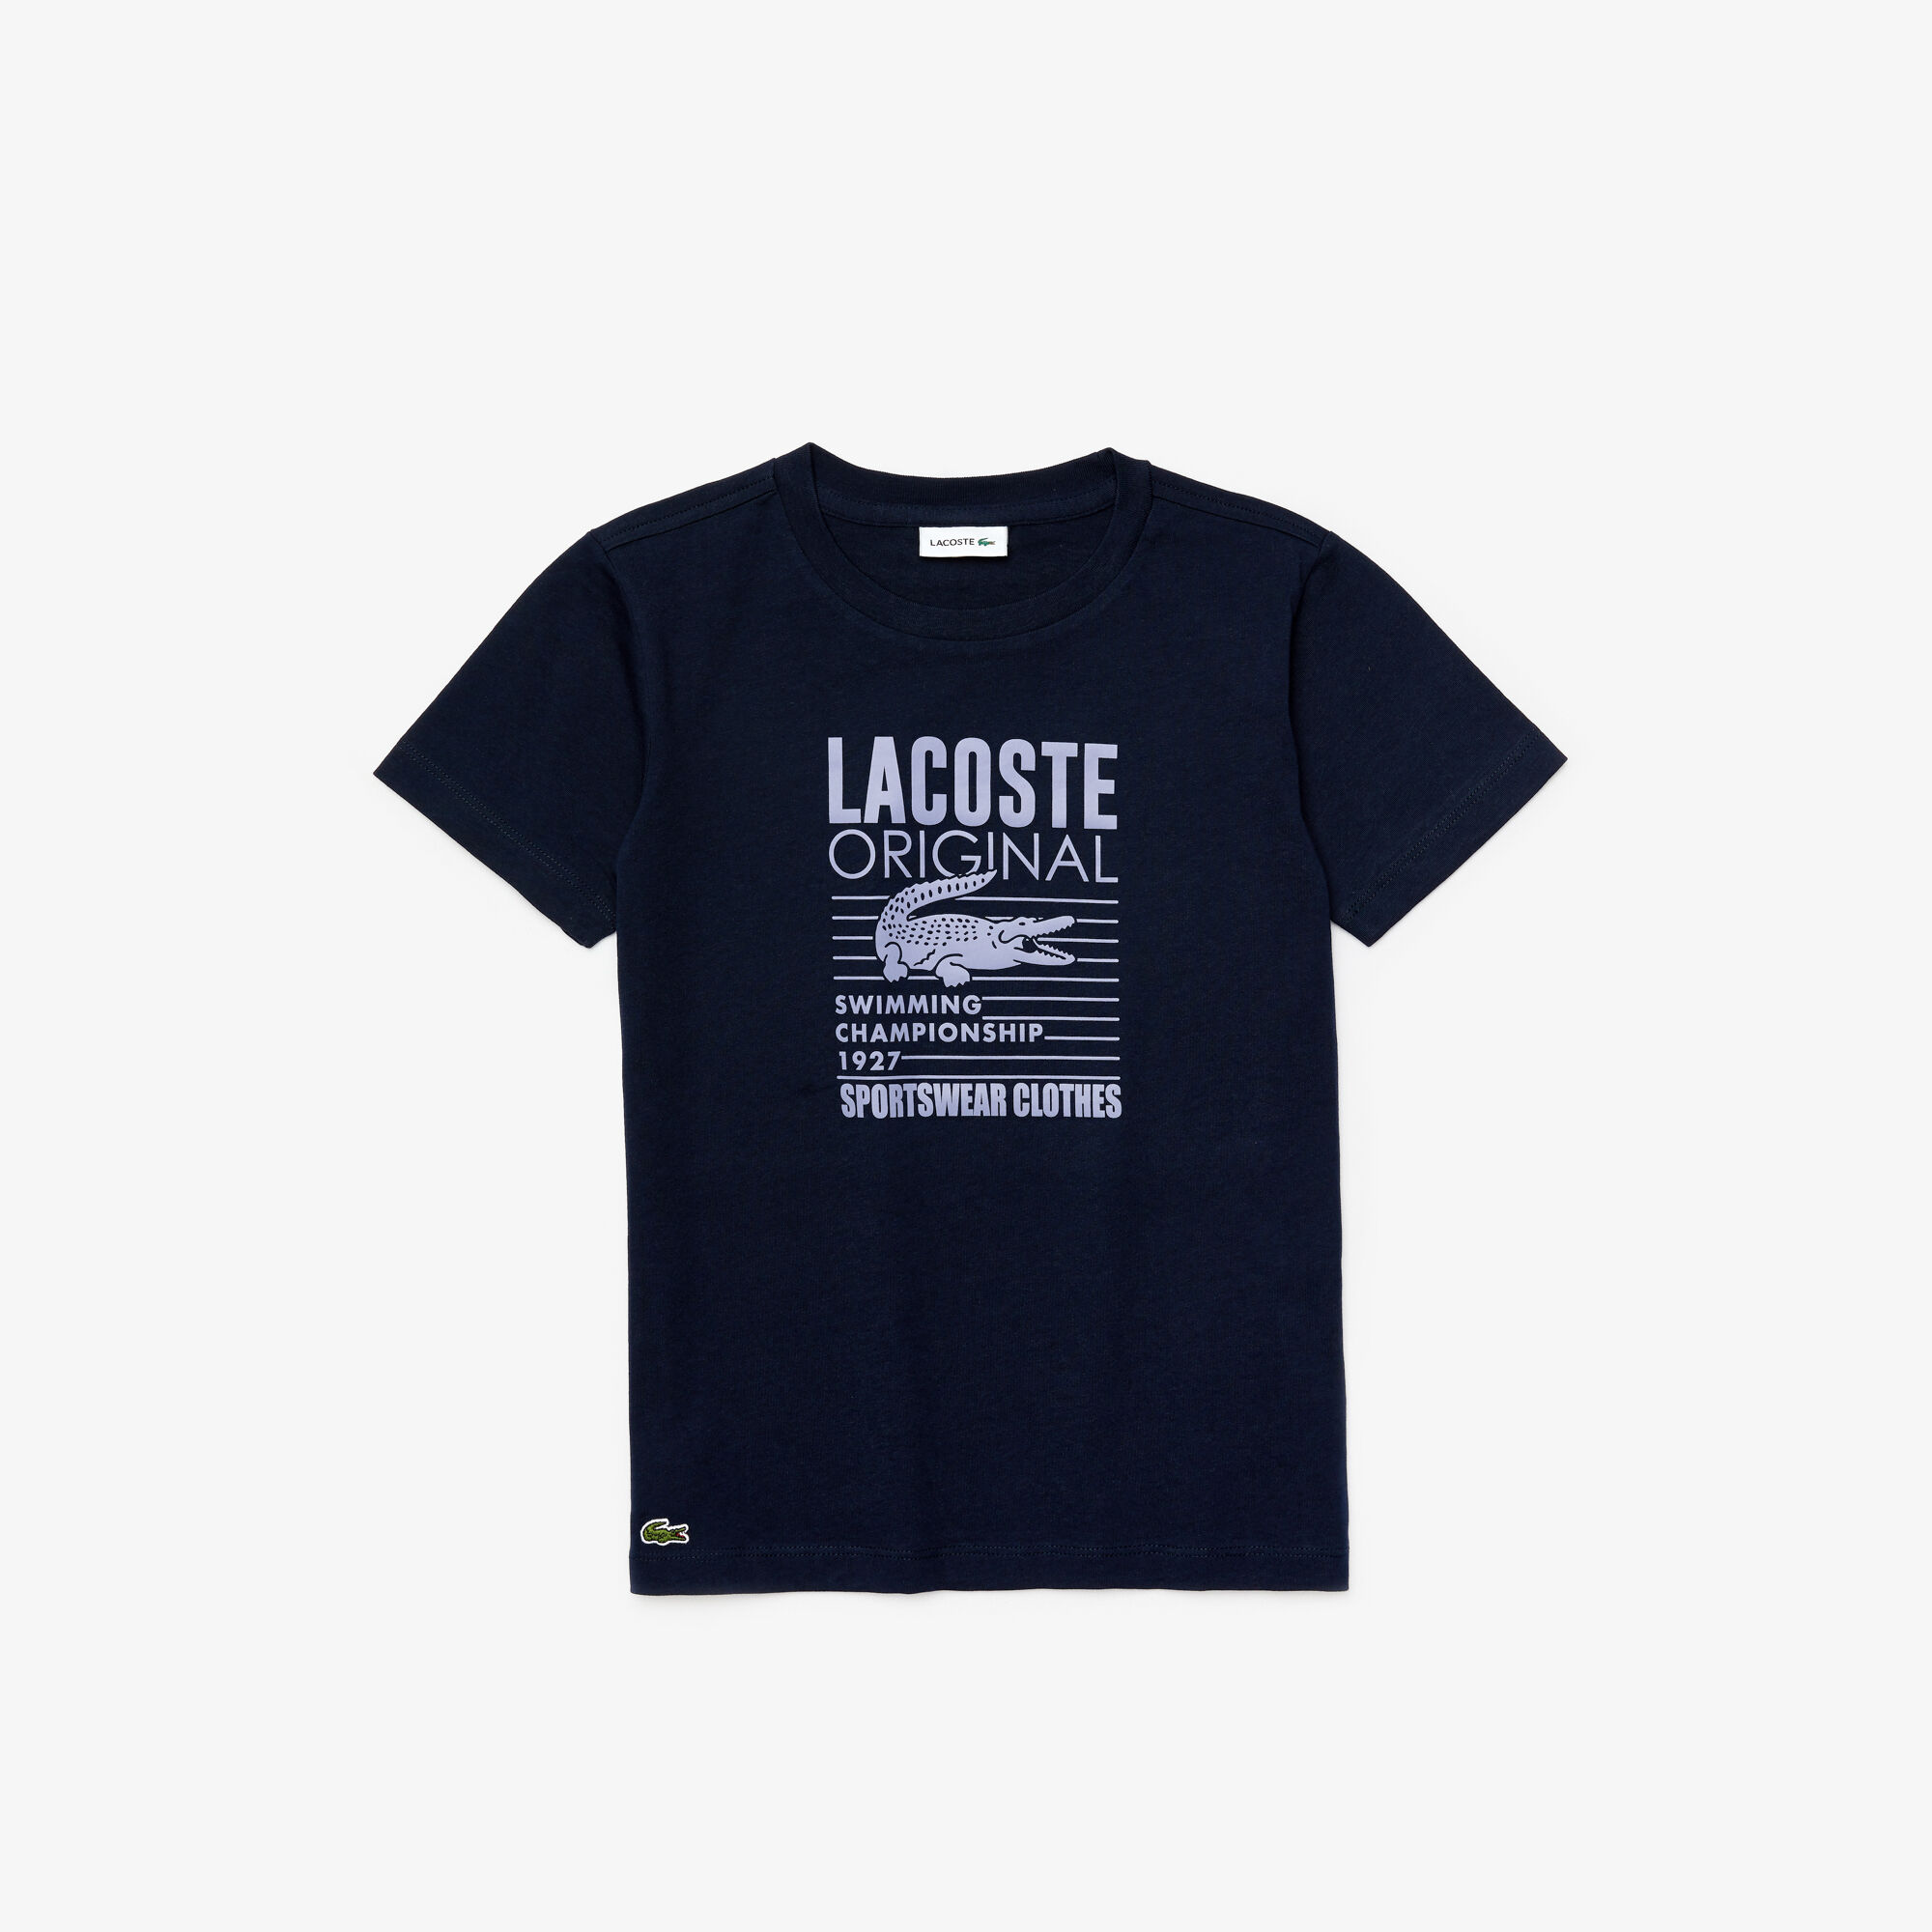 Boy’s Lacoste Original Cotton T-shirt